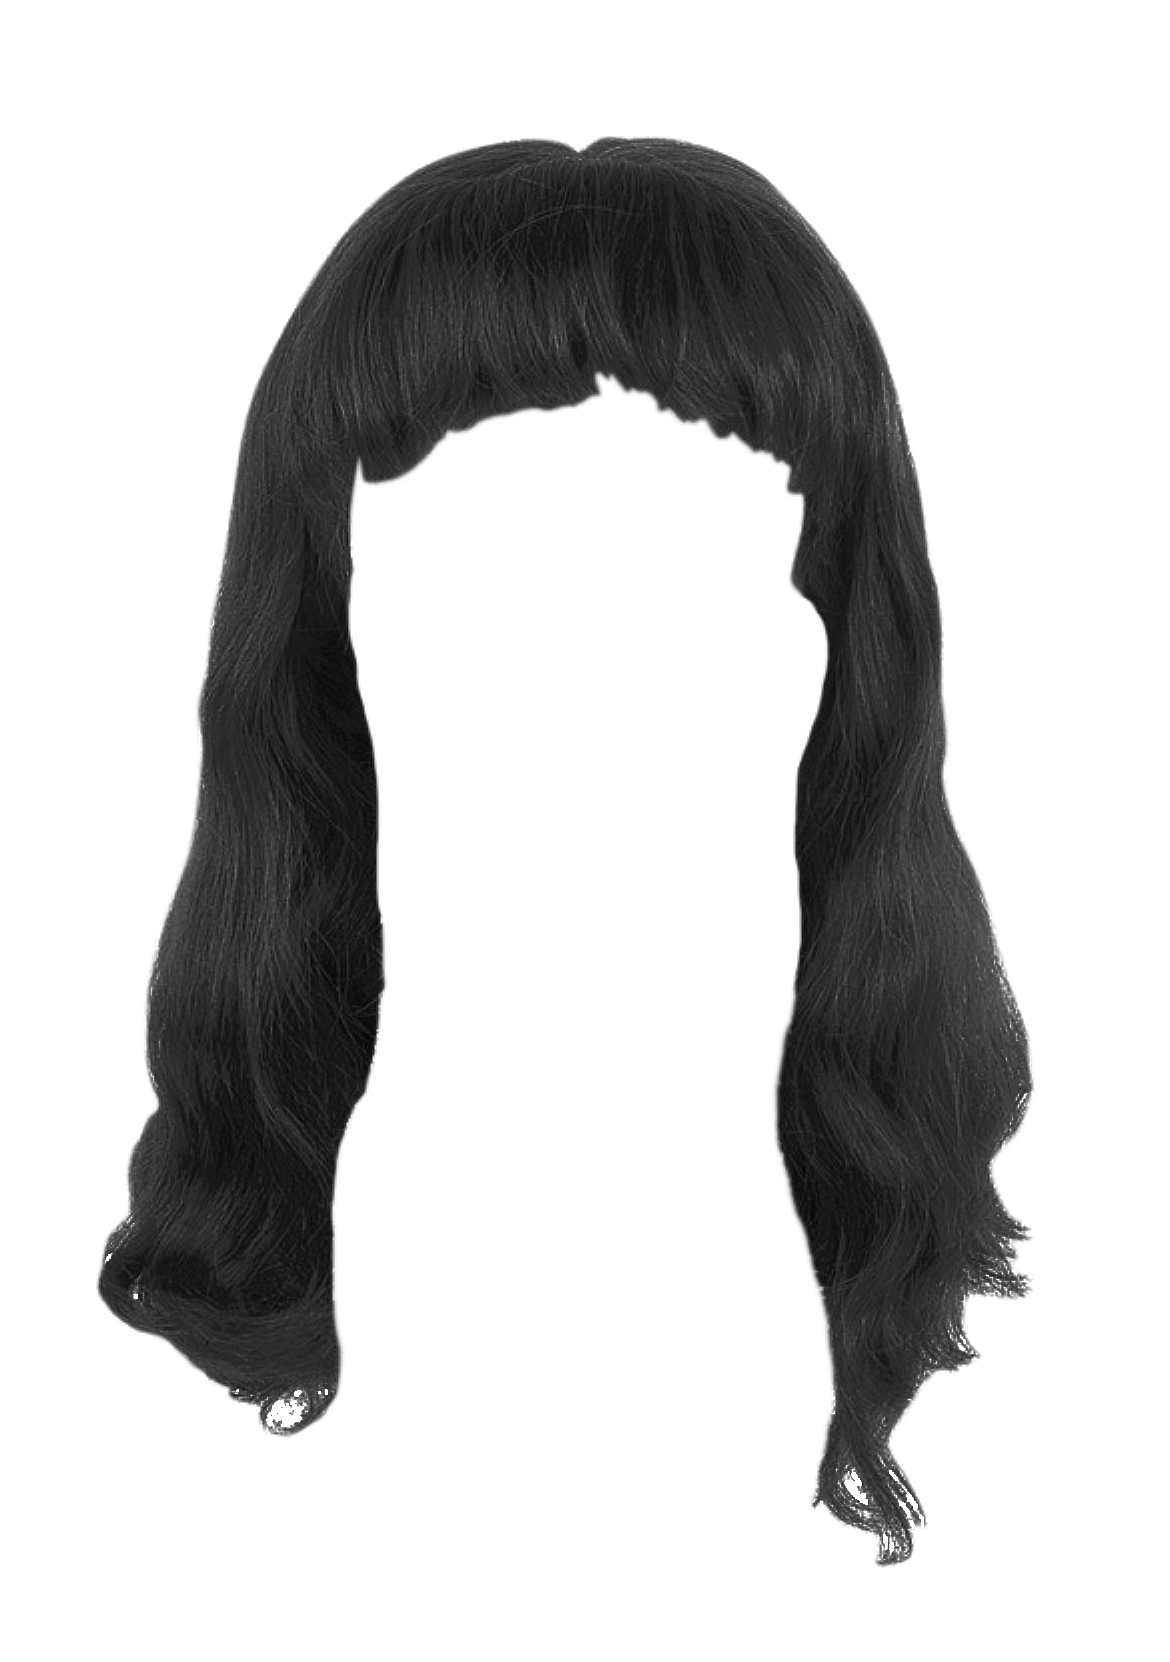 흑인 여성 머리 투명 이미지